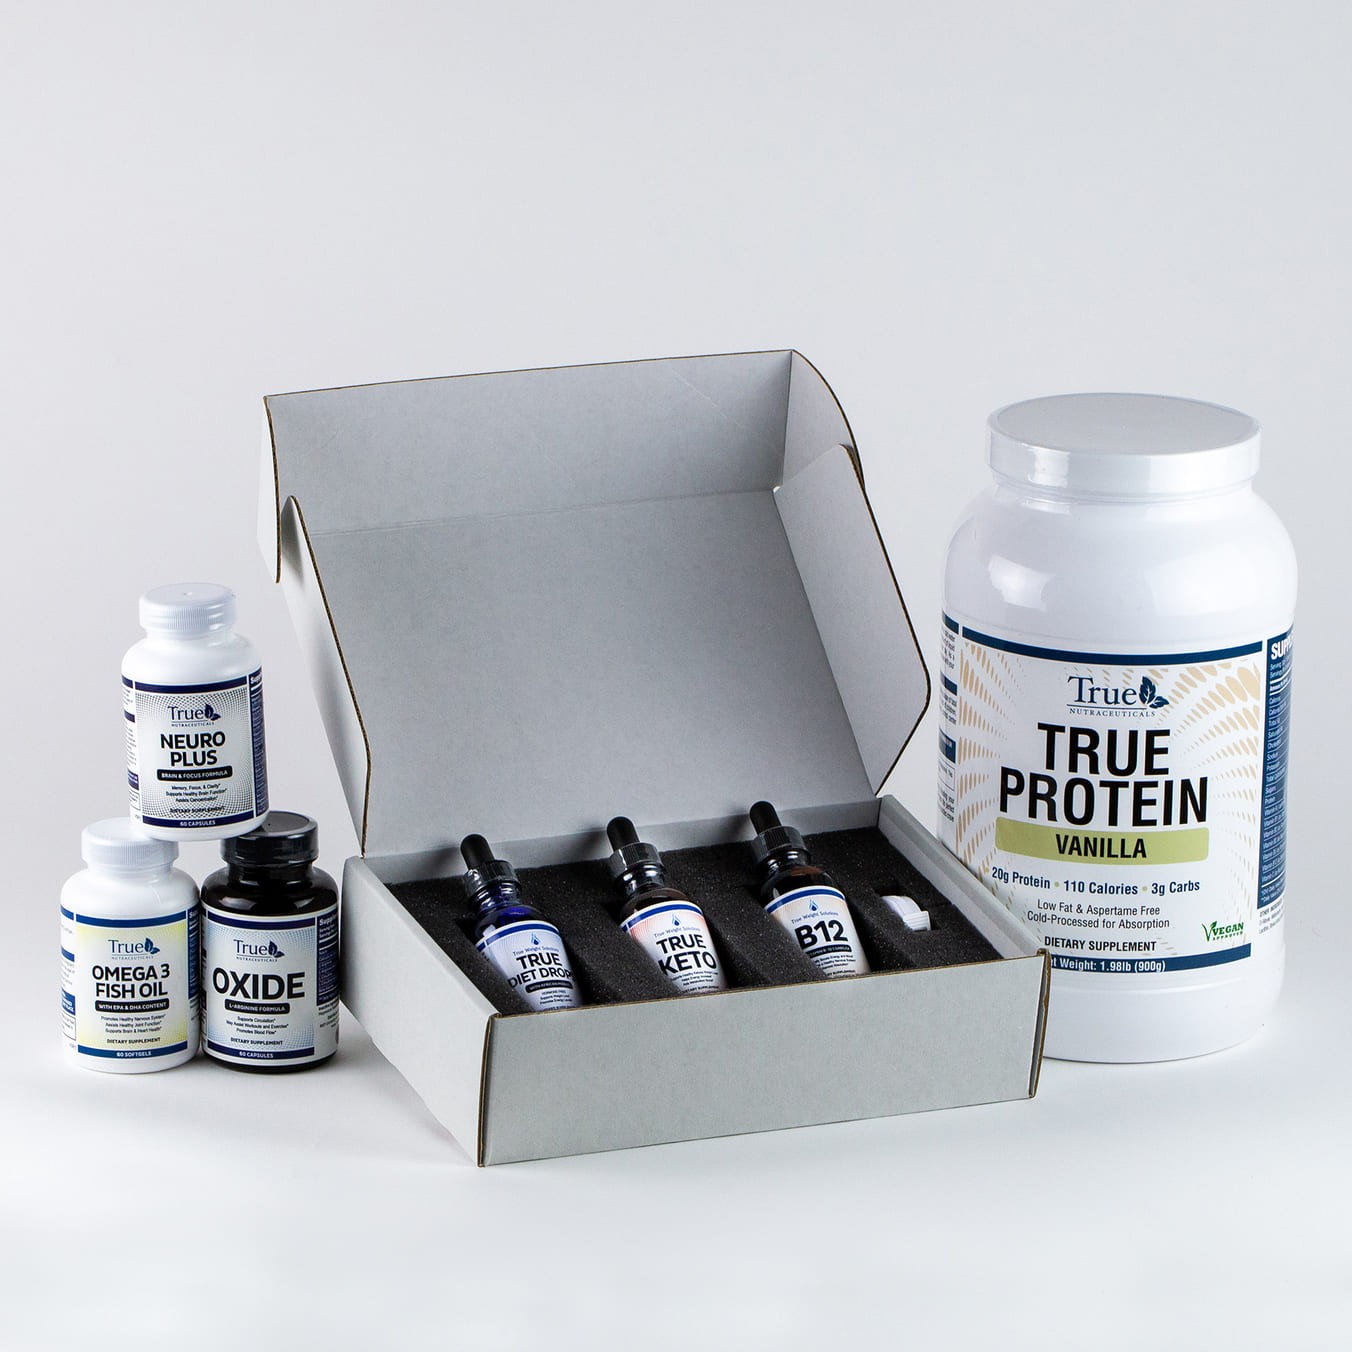 True protein packet box